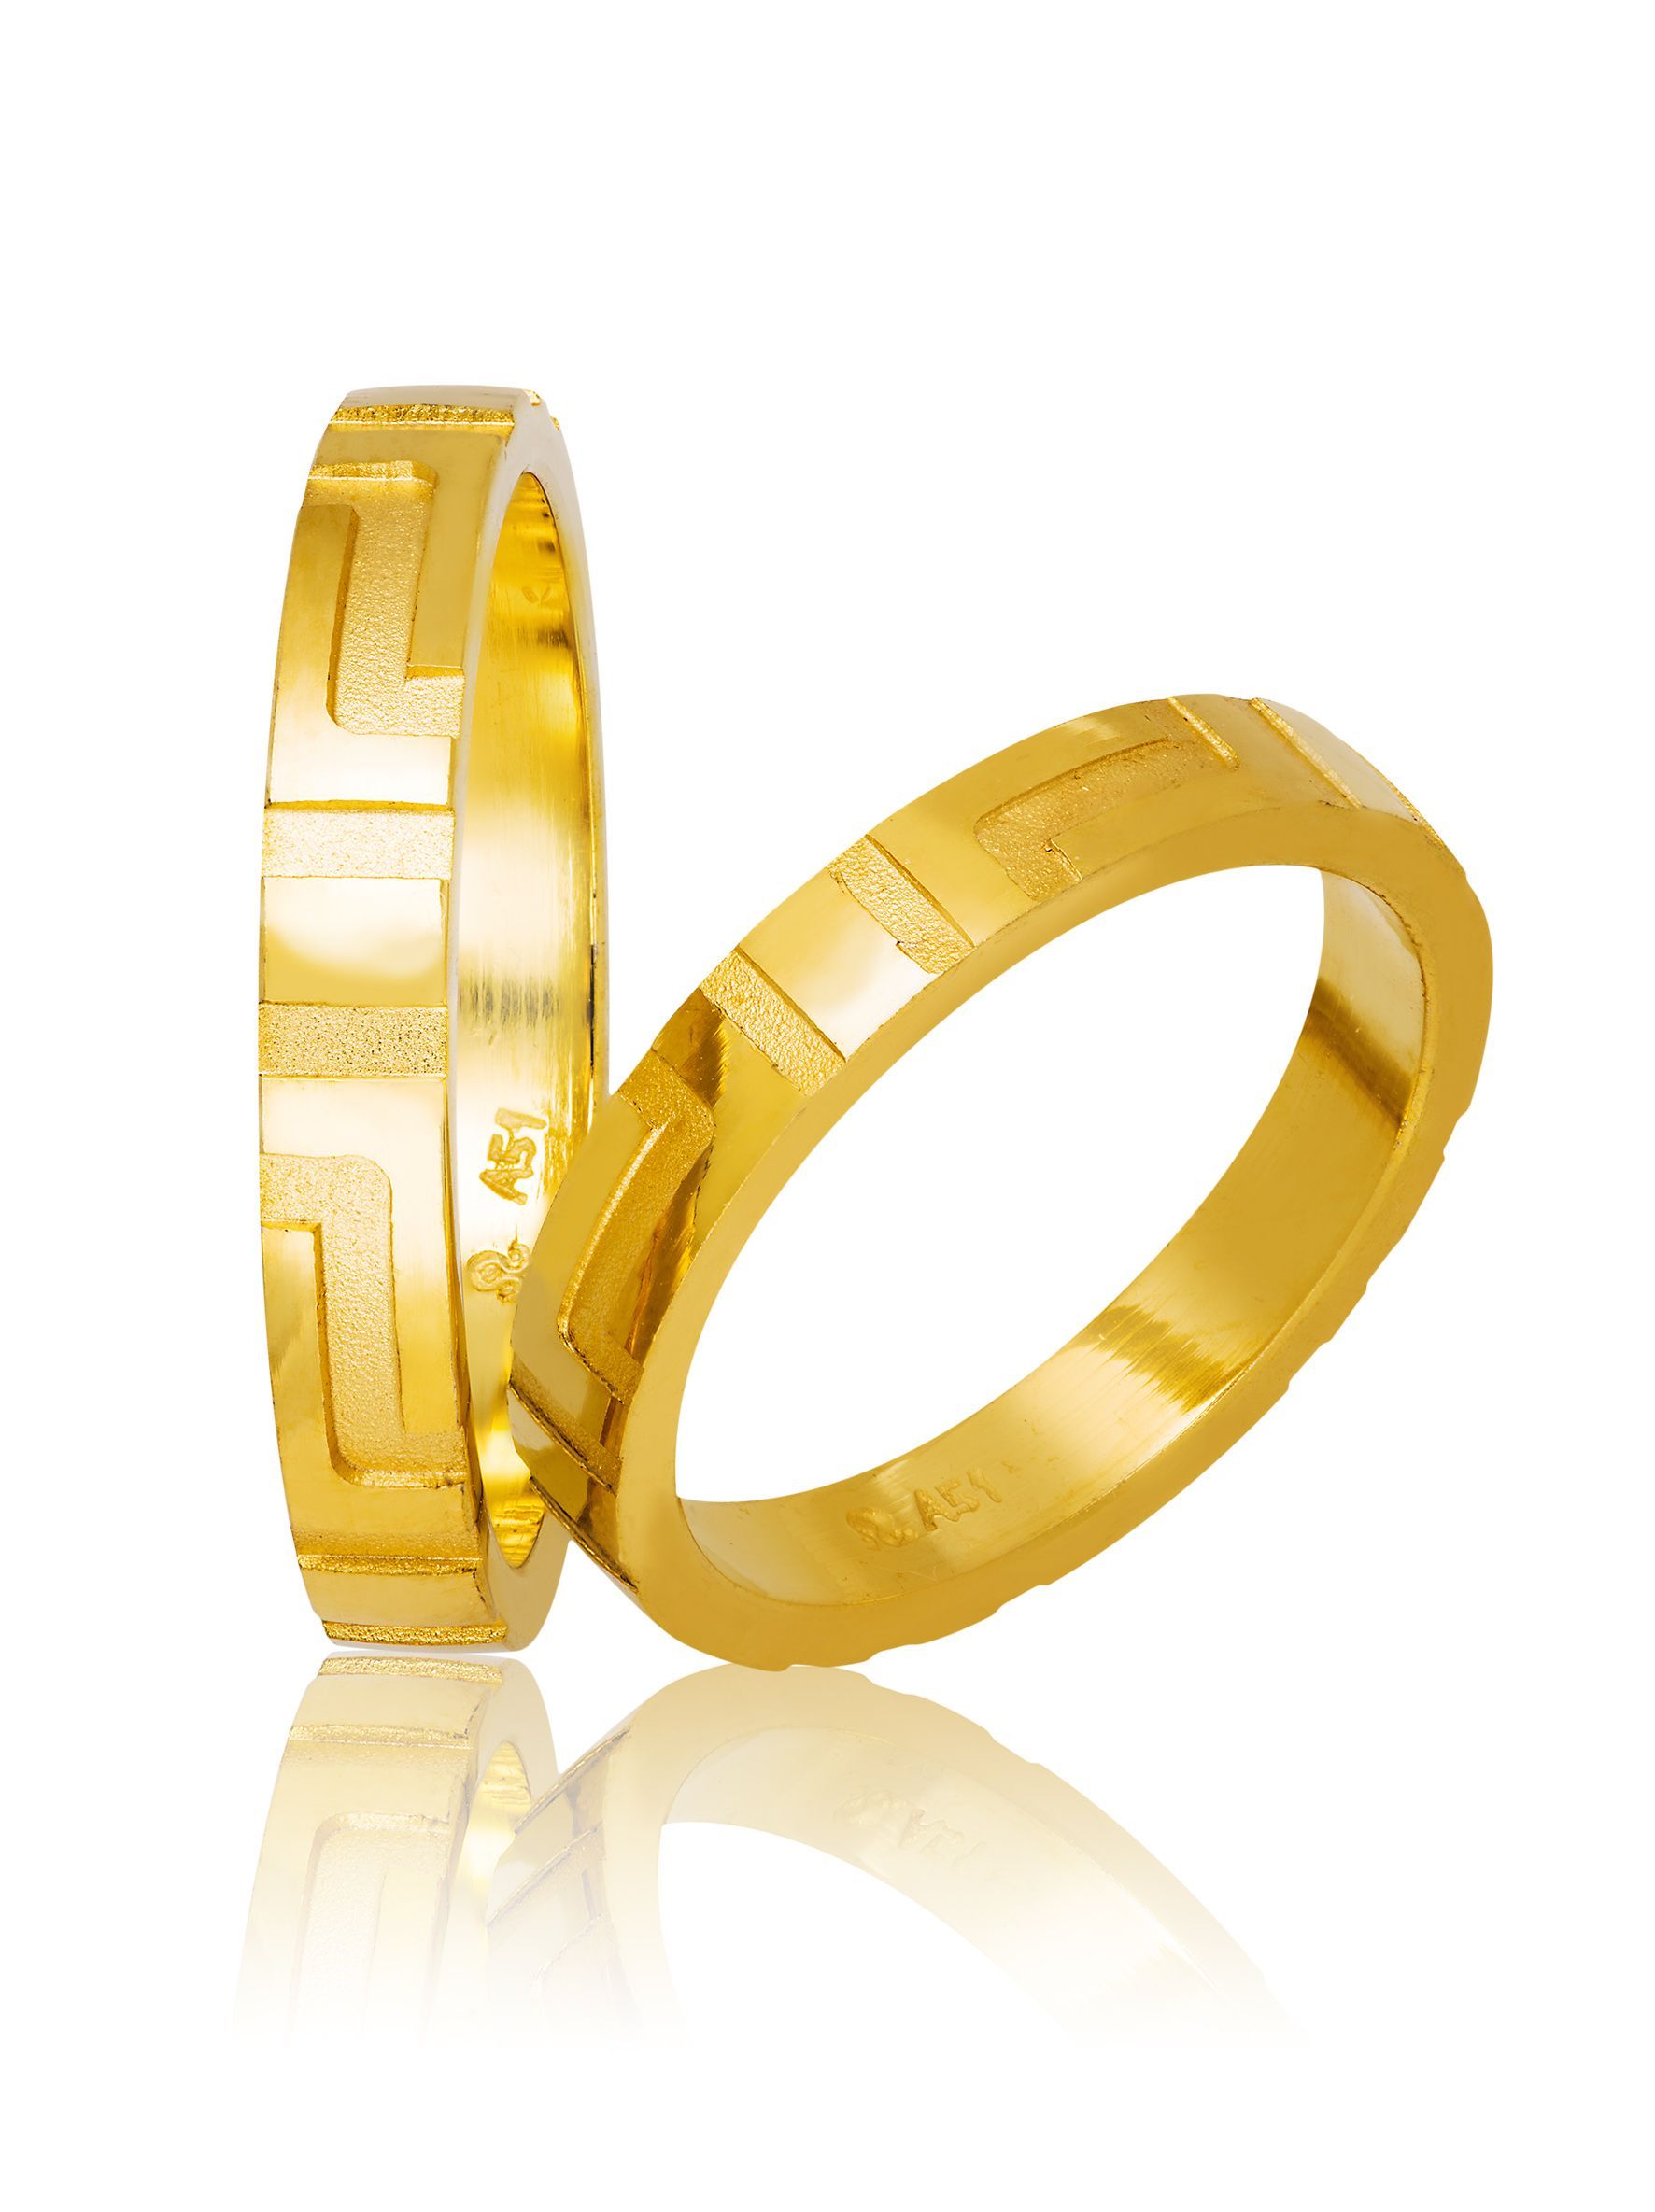 Golden wedding rings 3.5mm (code 714)